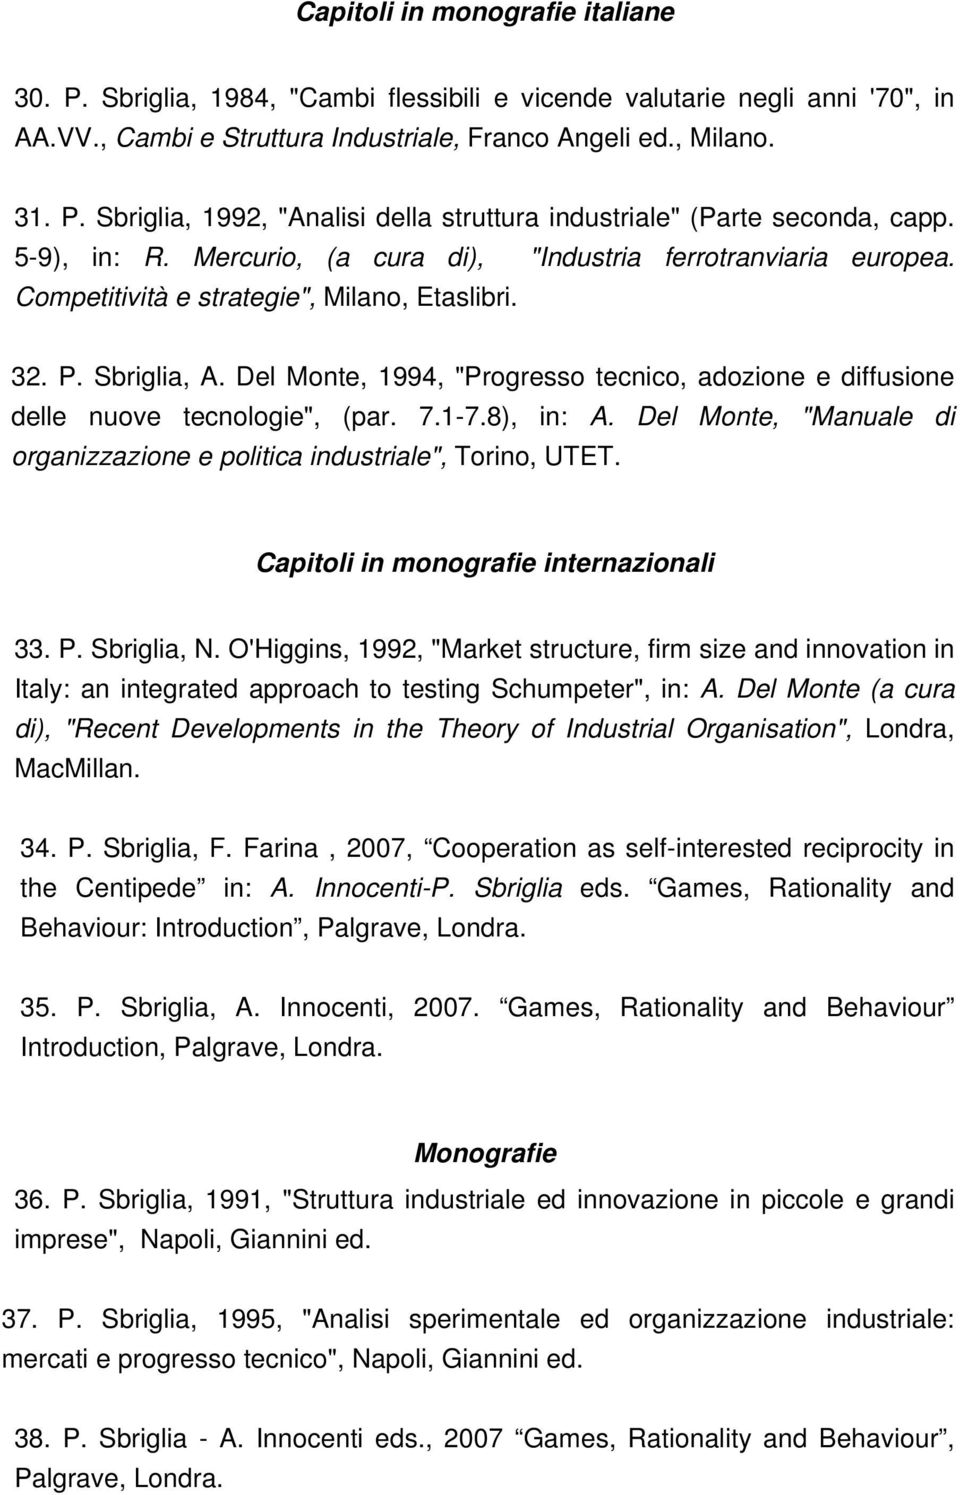 Del Monte, 1994, "Progresso tecnico, adozione e diffusione delle nuove tecnologie", (par. 7.1-7.8), in: A. Del Monte, "Manuale di organizzazione e politica industriale", Torino, UTET.